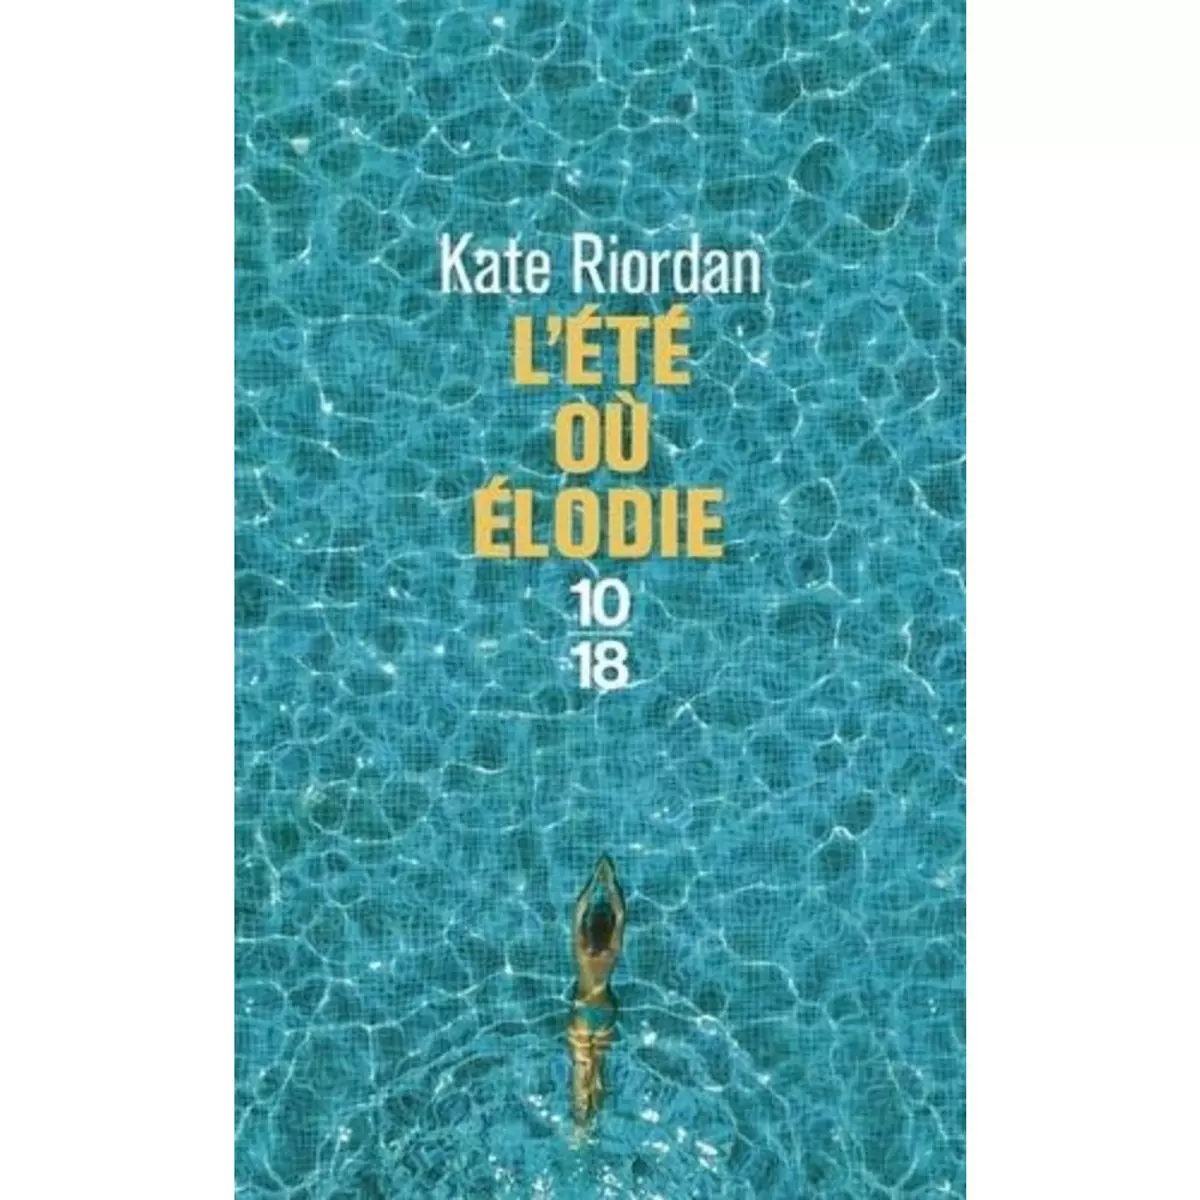  L'ETE OU ELODIE, Riordan Kate